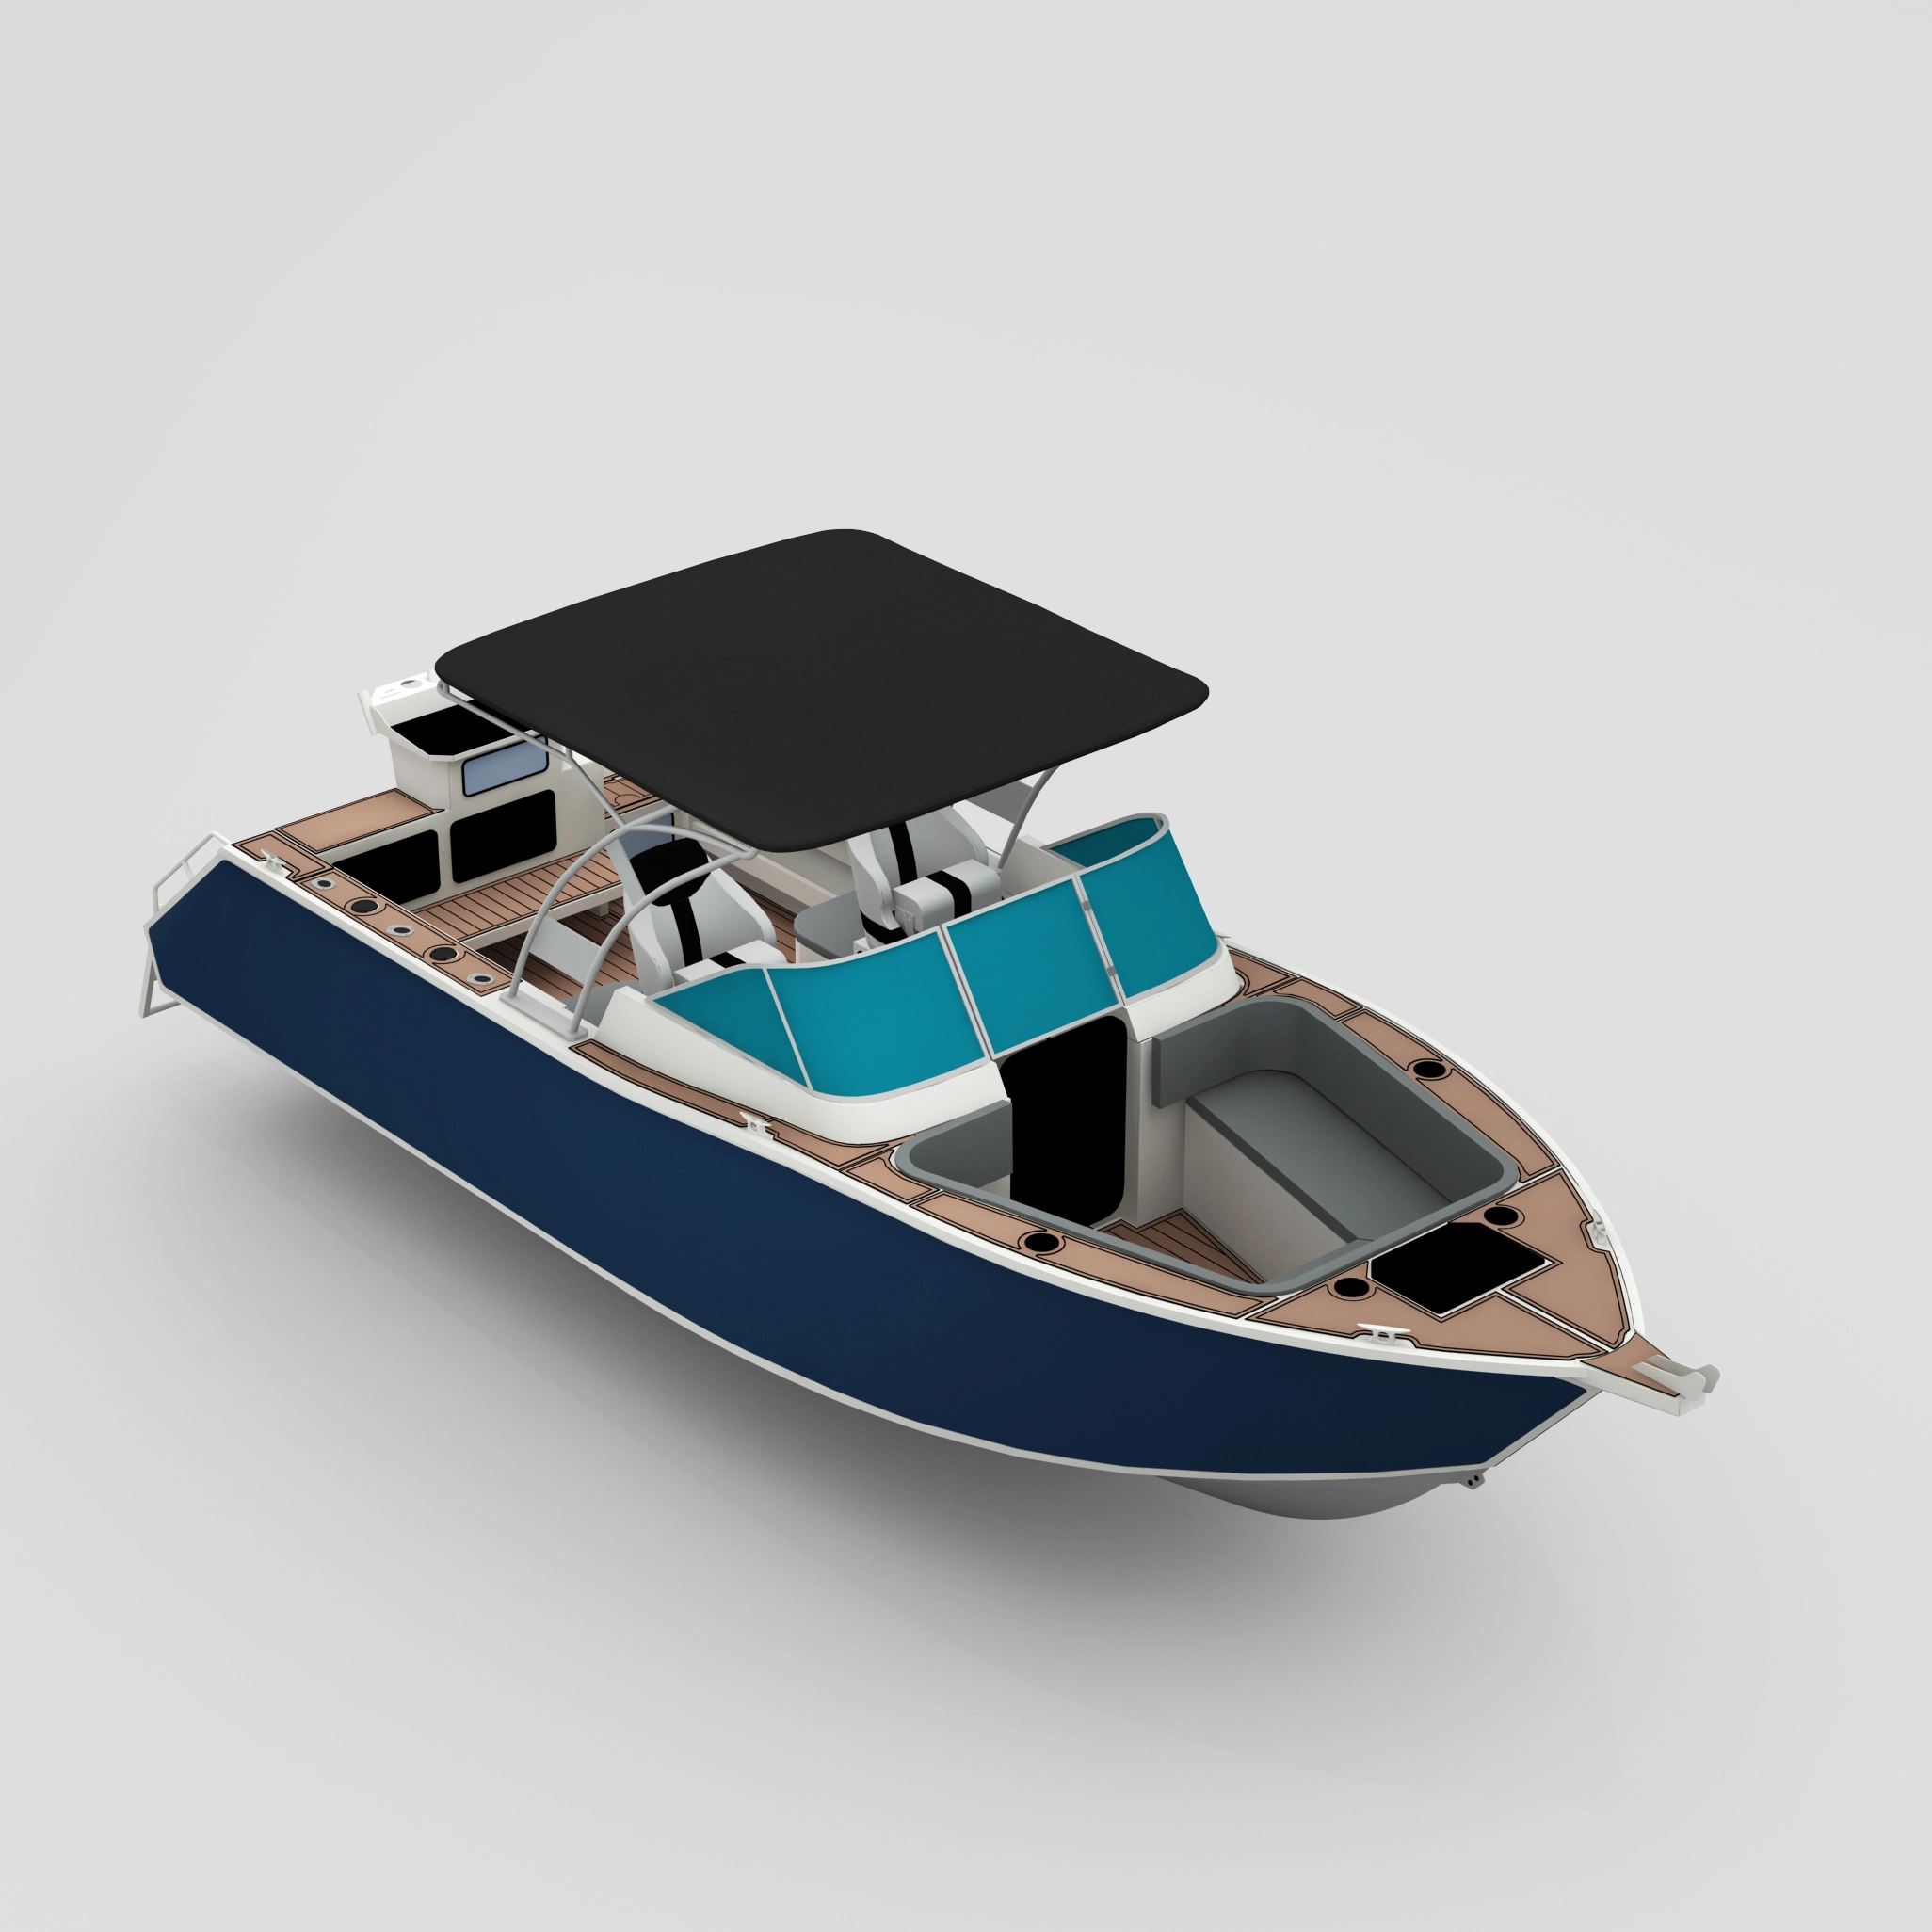 Profisher 750 Bowriderblack Aluminum Fishing Boat